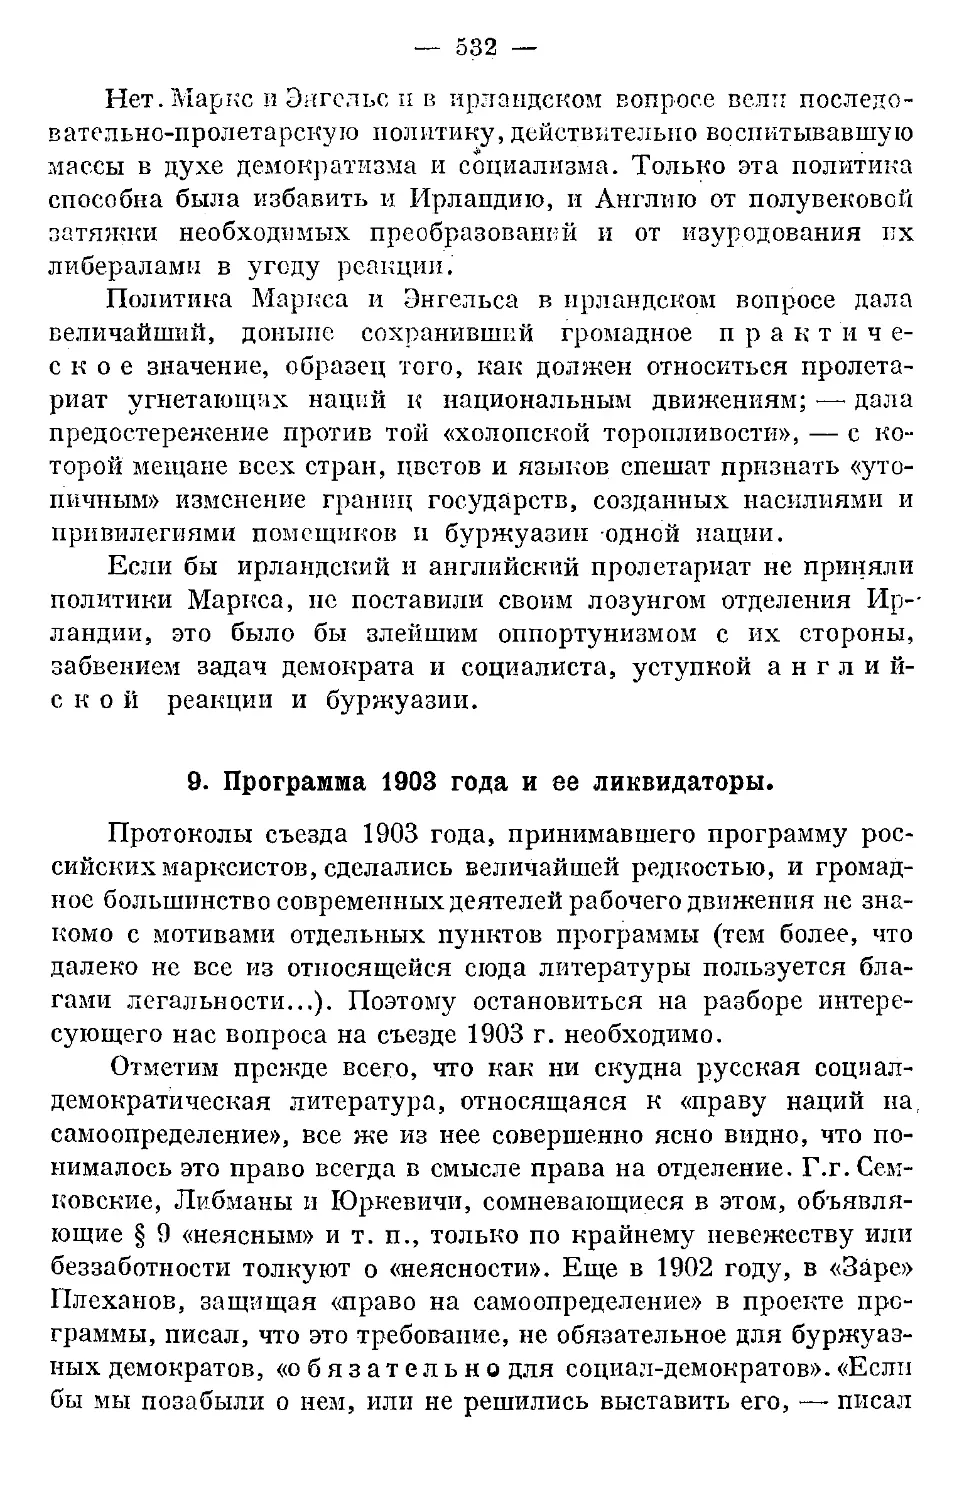 9. Программа 1903 года и ее ликвидаторы.